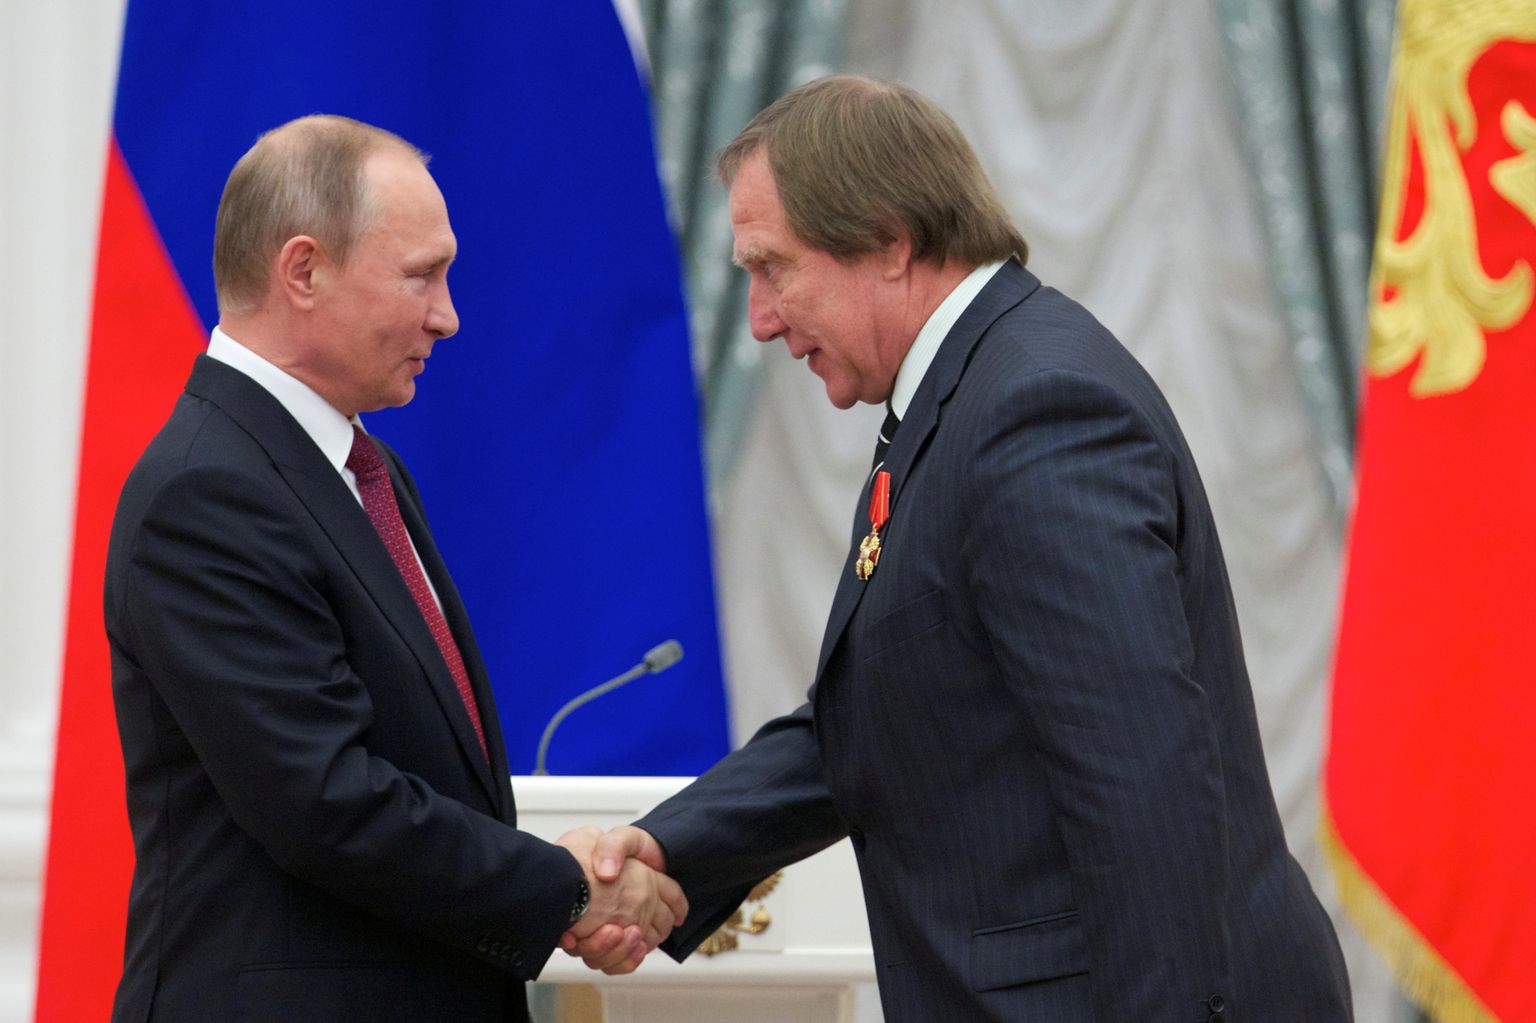 Venemaa president Vladimir Putin (vasakul) kätlemas 22. septembril 2016 Kremlis muusikaauhindade tseremoonial tuntud tšellisti ja oma lähikondlast Sergei Rolduginit